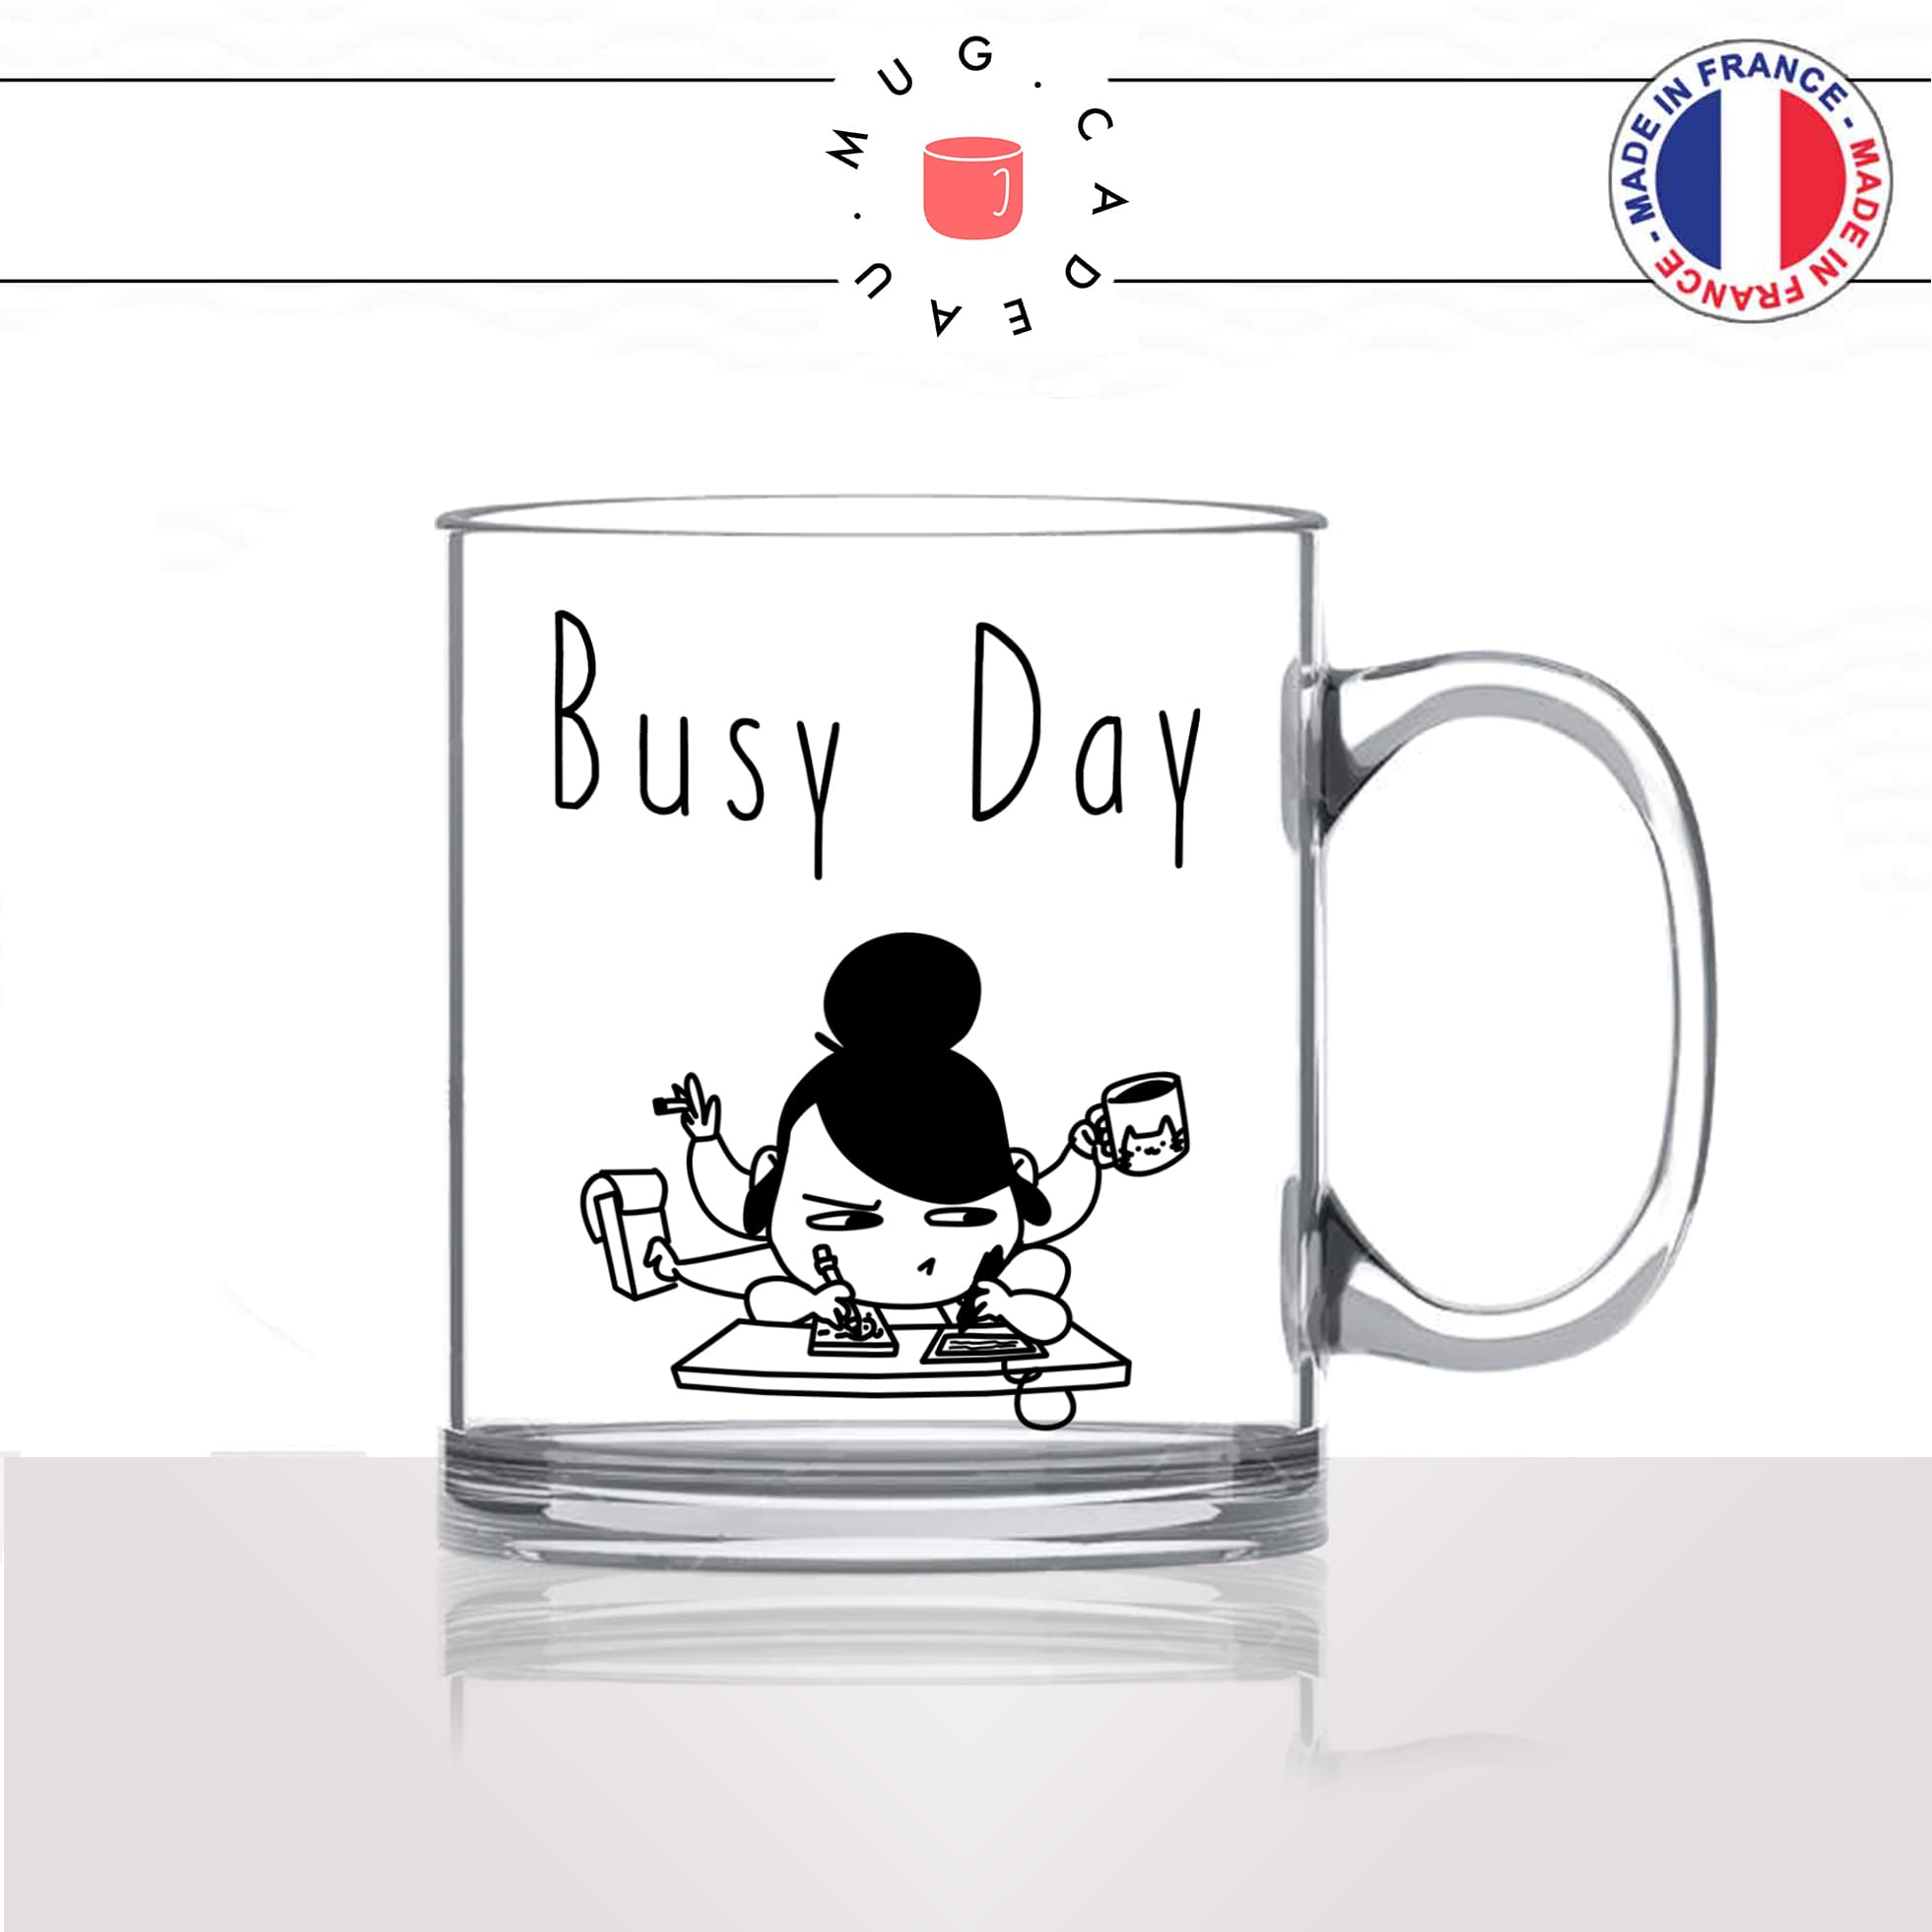 mug-tasse-en-verre-transparent-glass-busy-day-bureau-collegue-femme-secretaire-patronne-bosseuse-fun-café-thé-idée-cadeau-original-personnalisable2